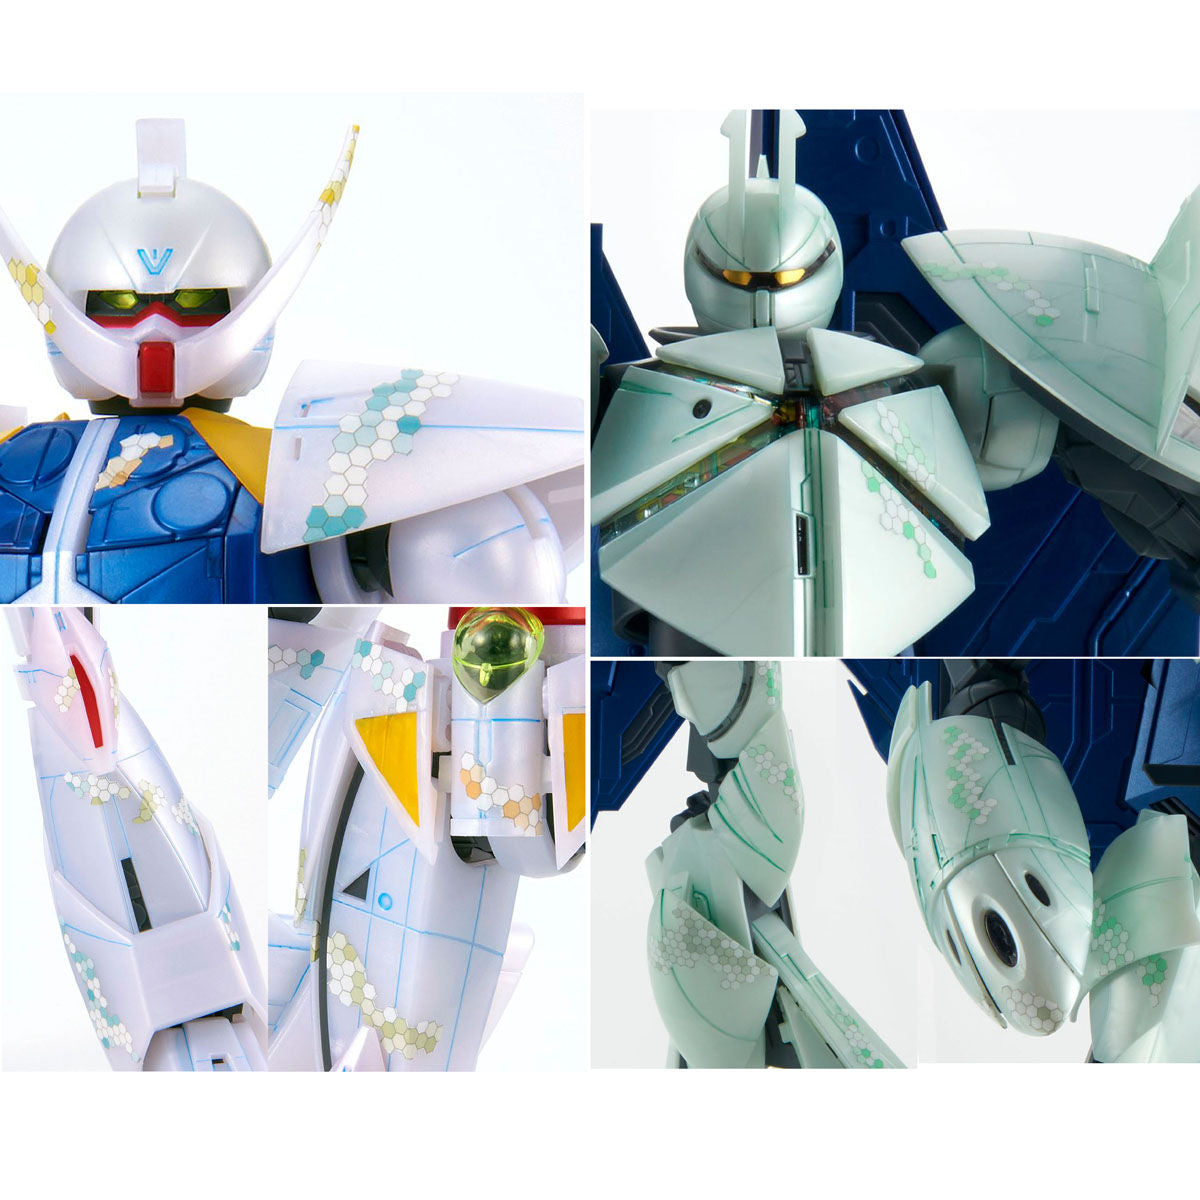 P-Bandai: MG 1/100 Turn X / Turn A Gundam Nano Skin Image [End of May 2020]